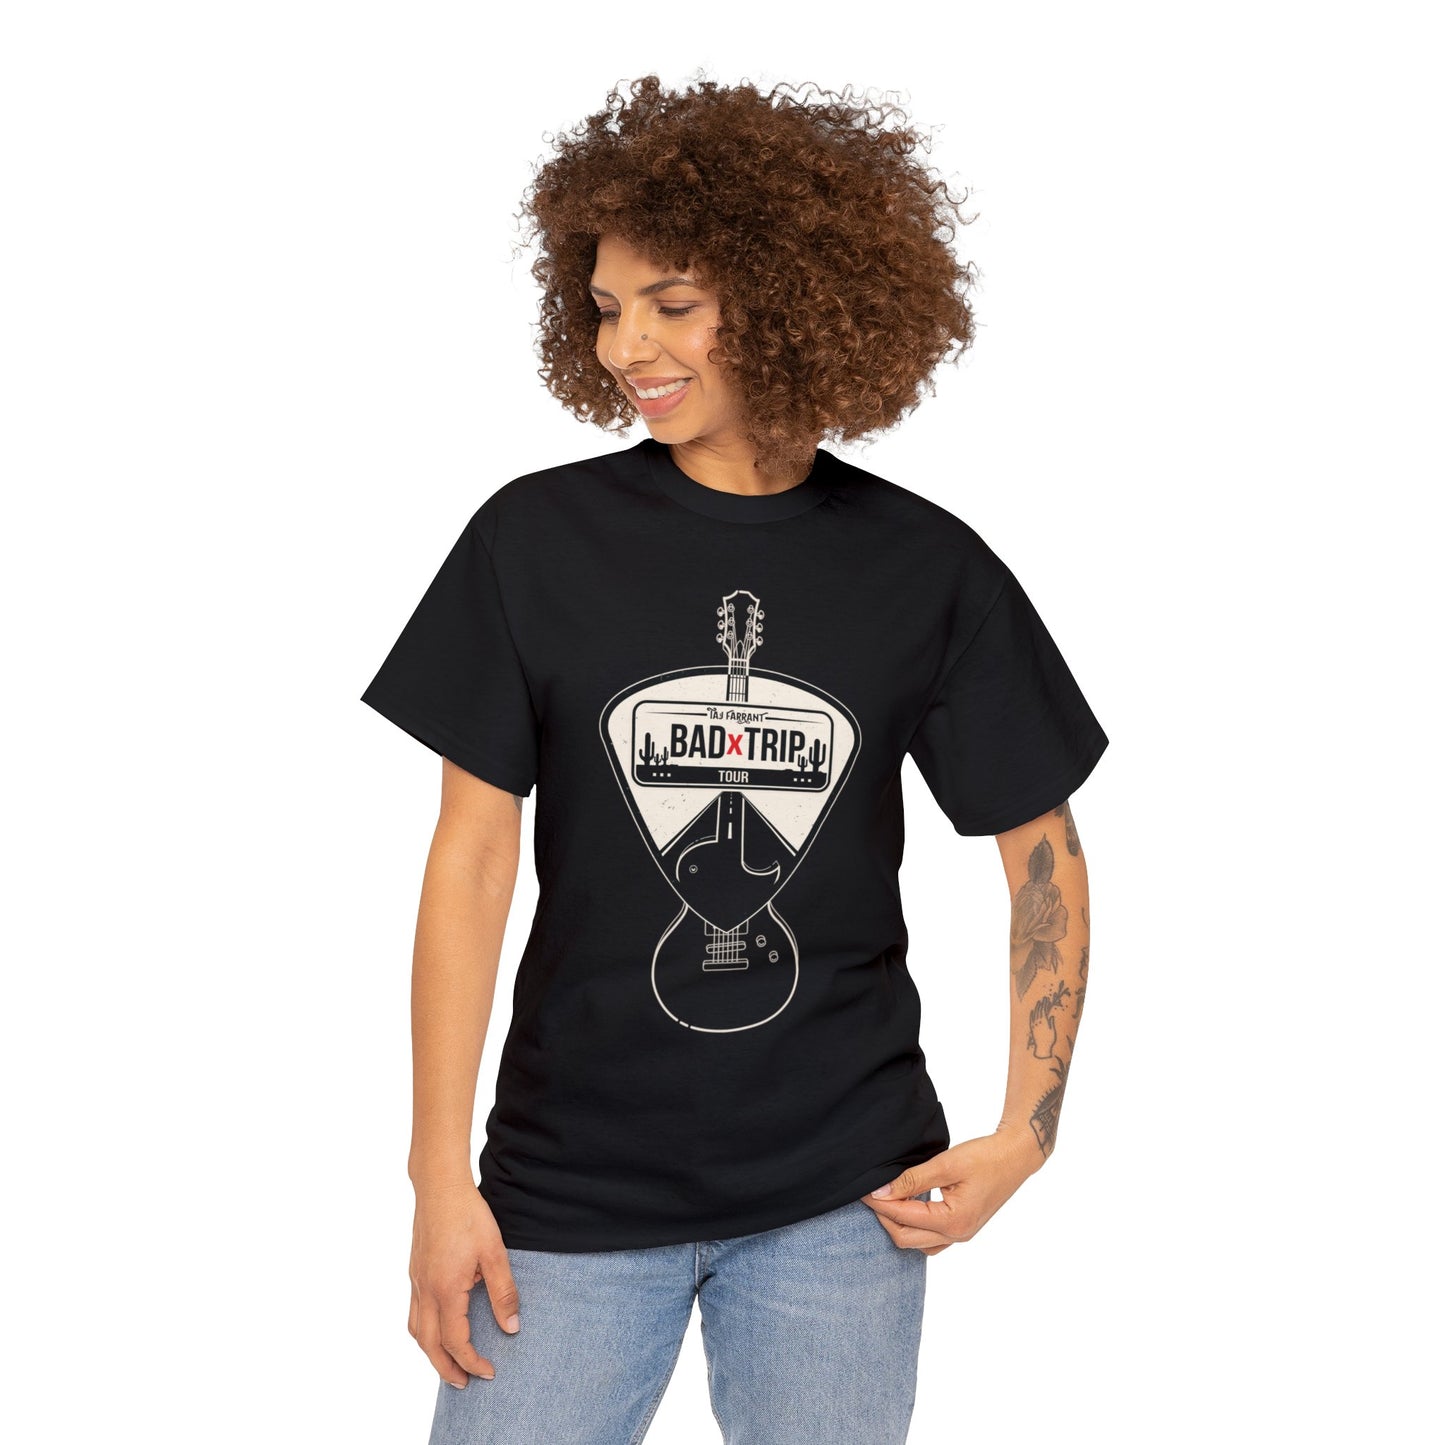 Taj Farrant "Bad Trip" Tour Shirt (Unisex)